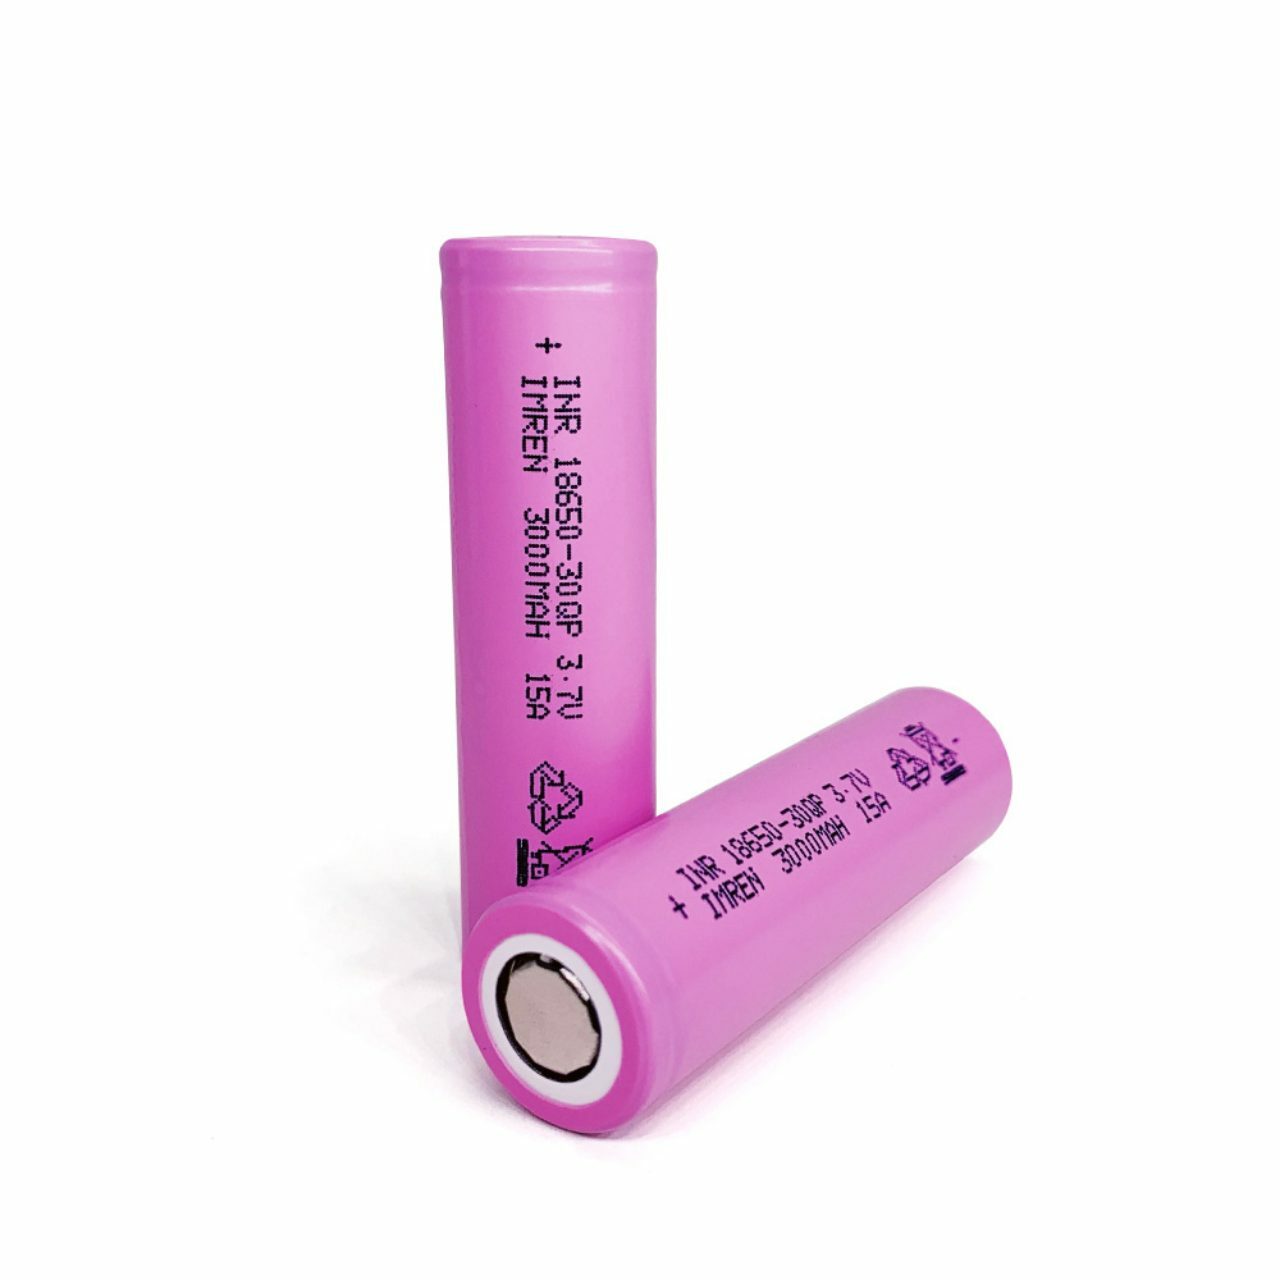 Imren (Pink) IMR 18650 30QP (3000mAh) 15A 3.7v Battery Flat-Top - 1 Pack